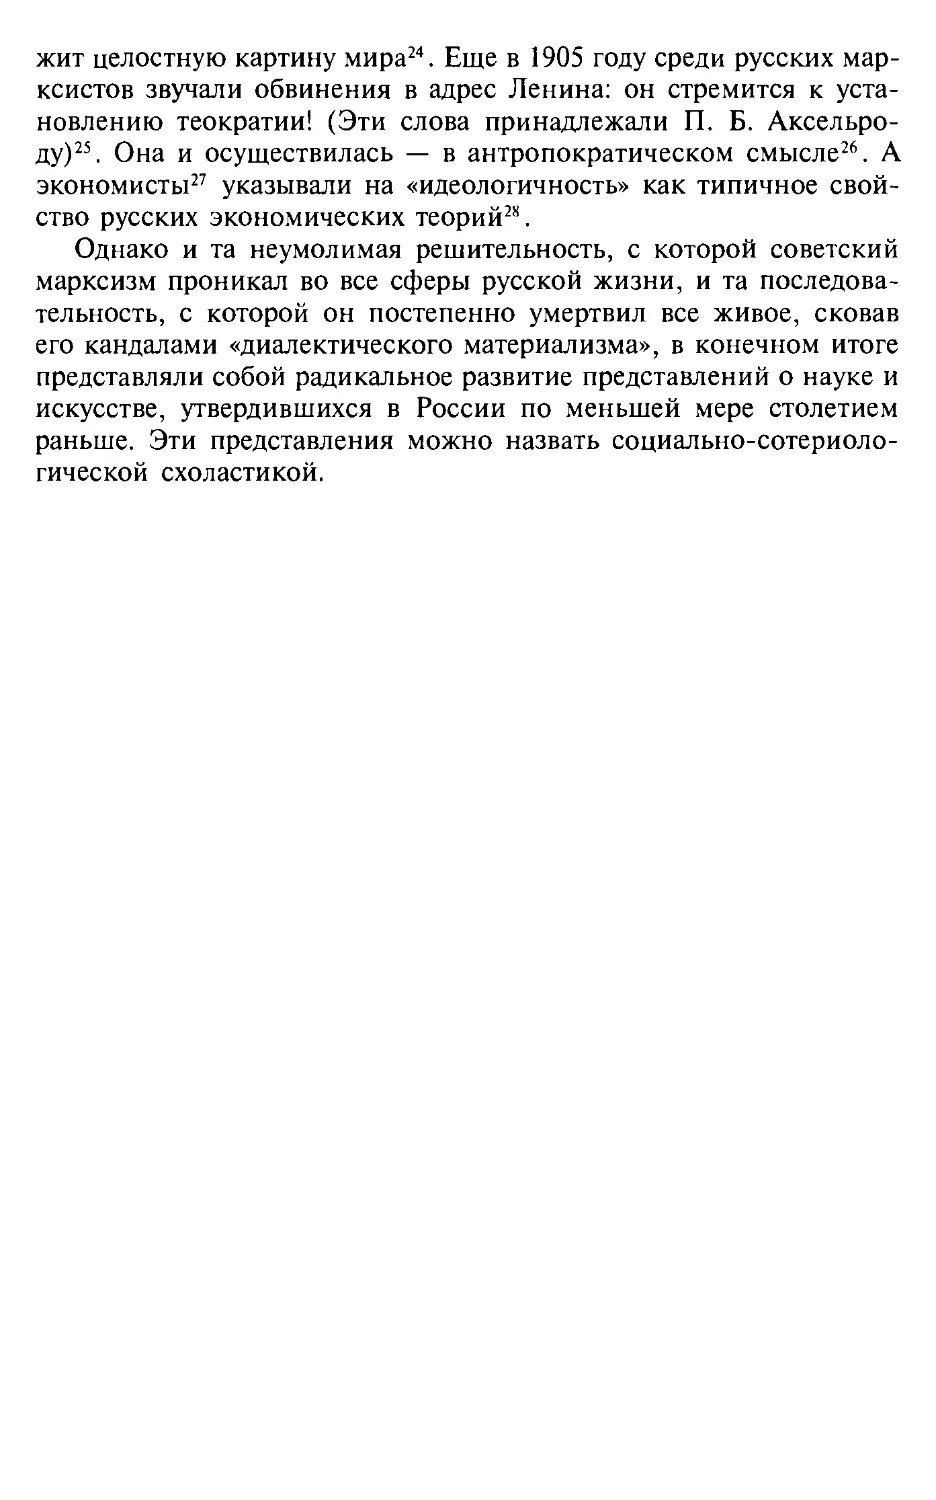 Глава 2. Революционная идеология русской интеллигенции: социальный гнозис и социальная сотериология